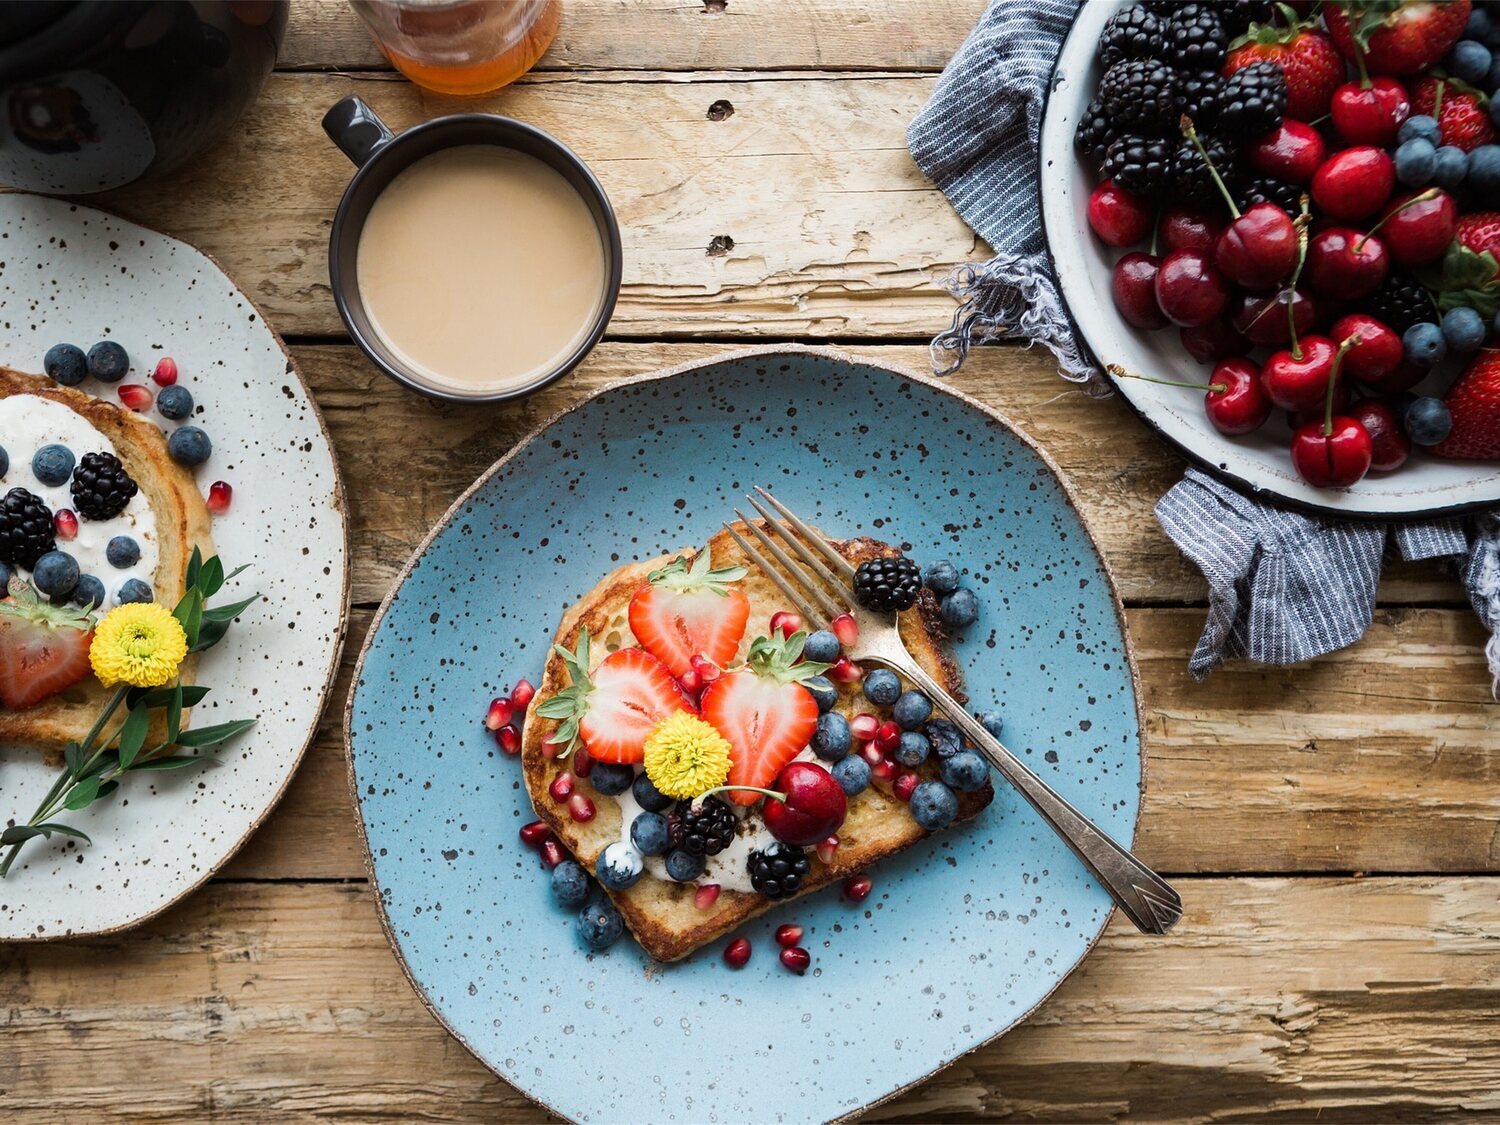 Este es el desayuno ideal y los alimentos más saludables que consumir, según Harvard